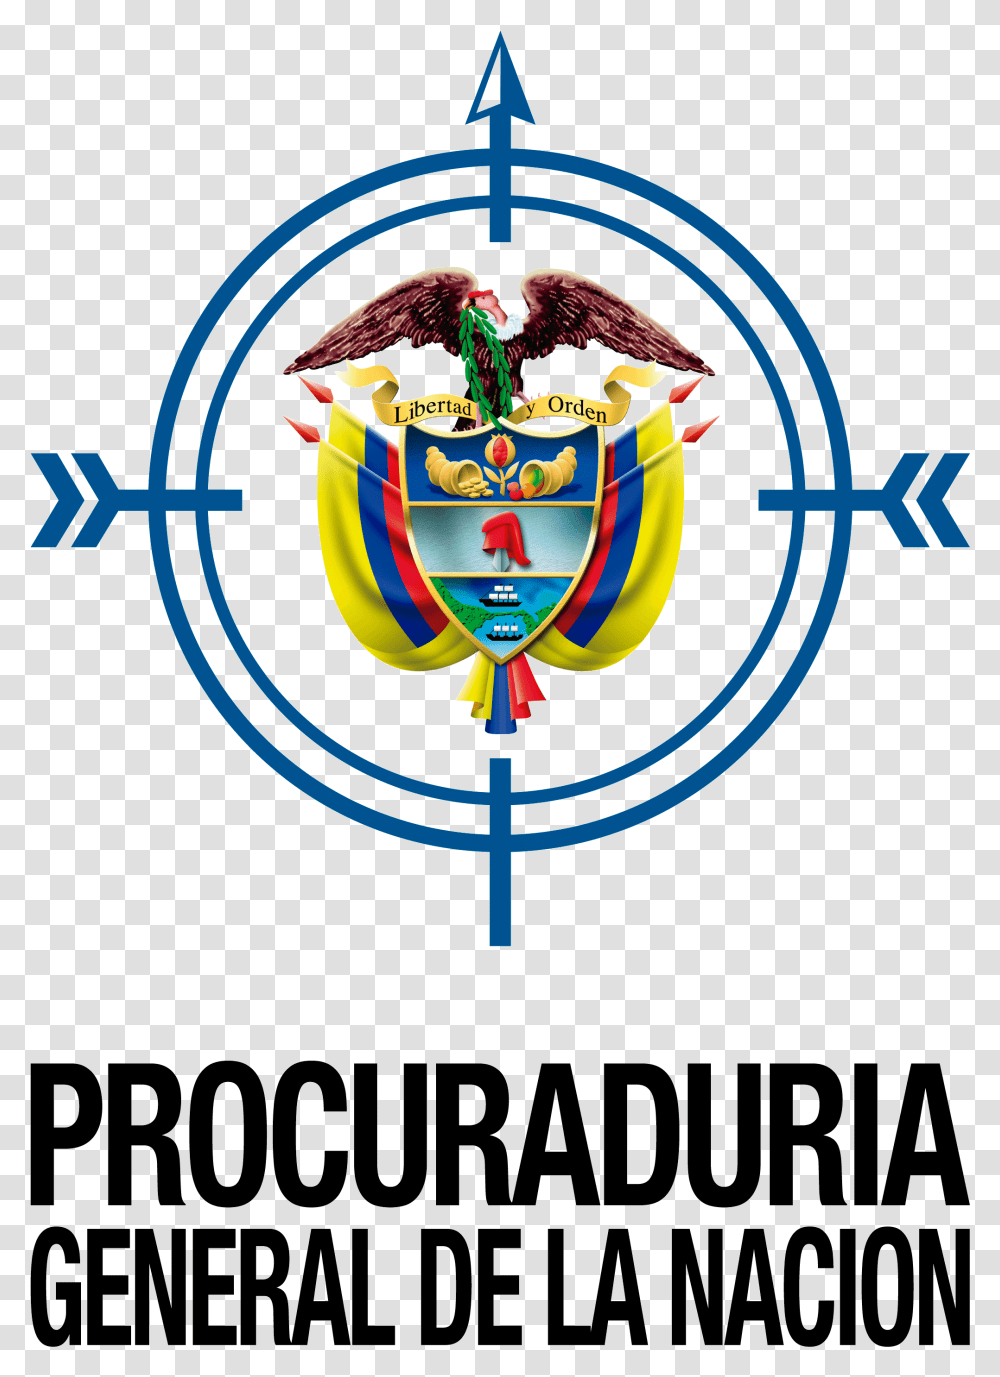 Procuraduria General De La Nacion Animado, Poster, Advertisement, Emblem Transparent Png